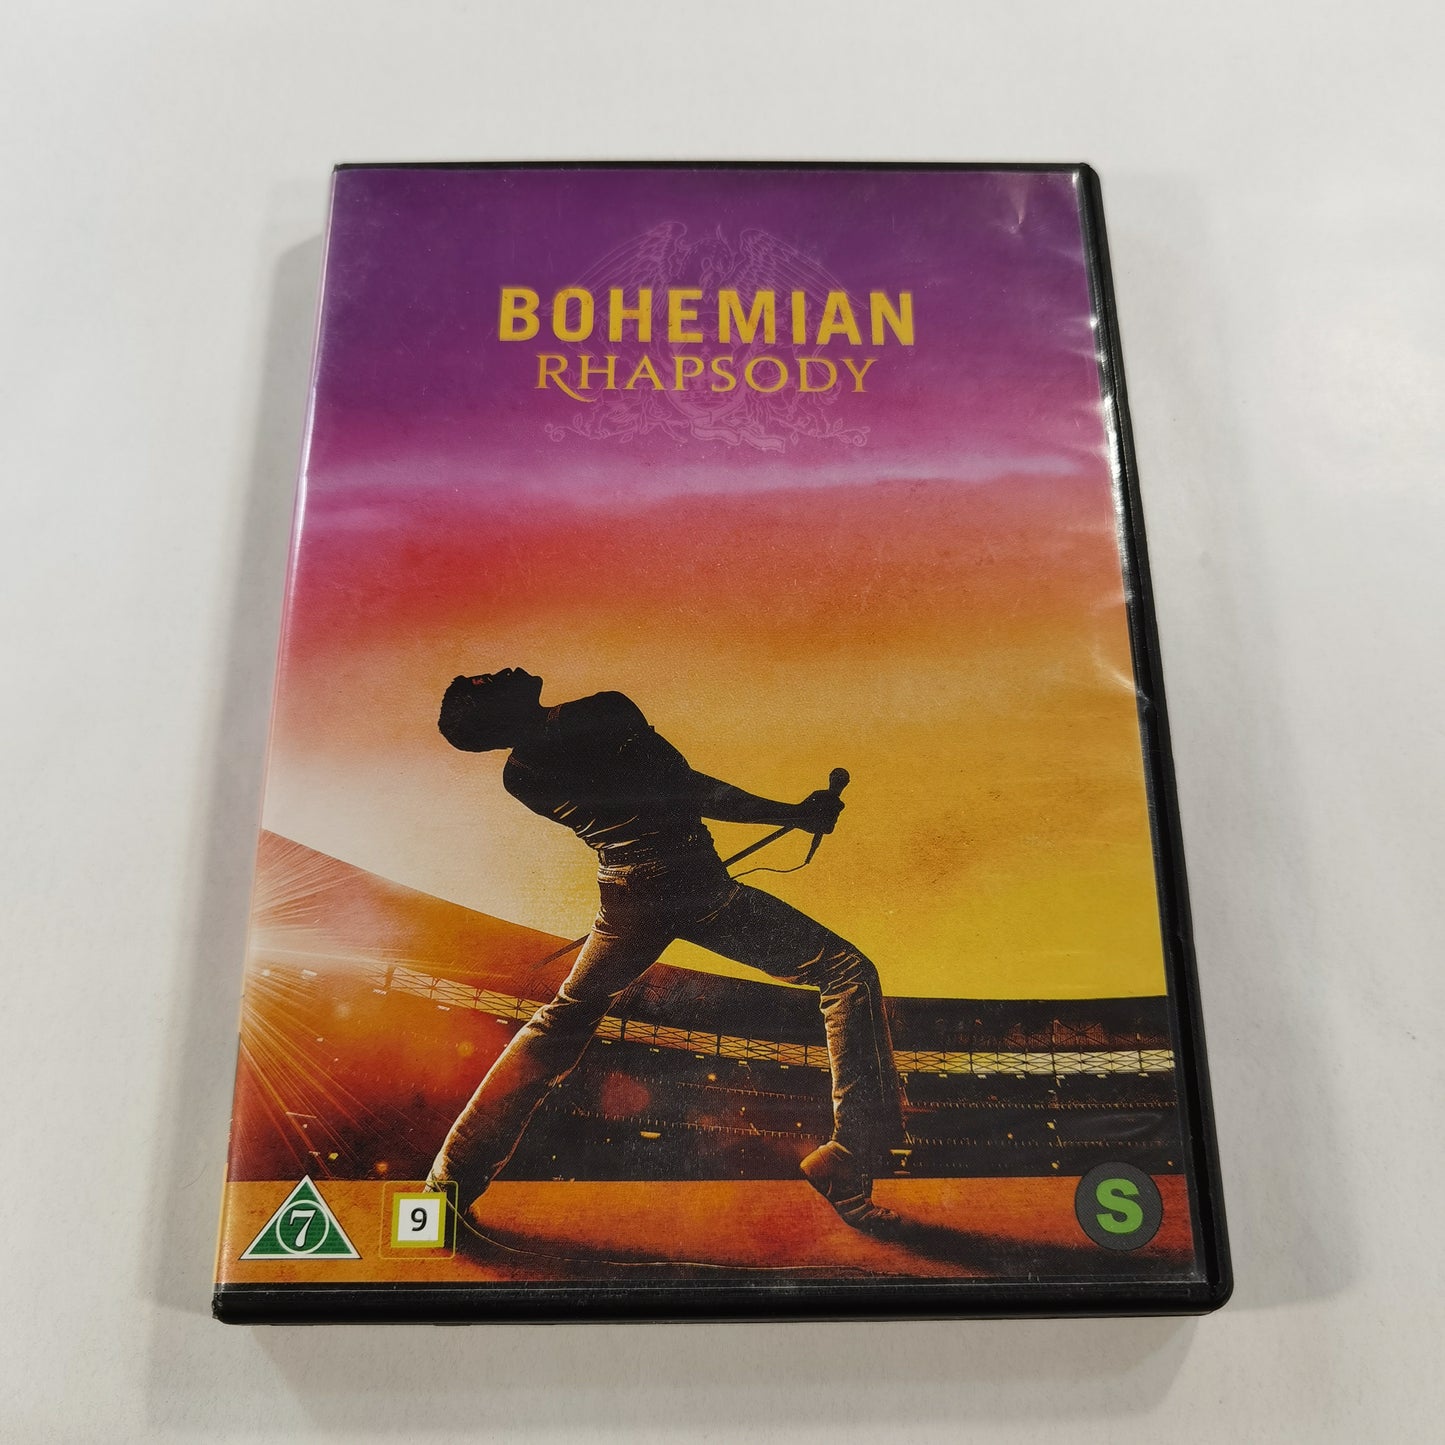 Bohemian Rhapsody (2018) - DVD SE NO DK FI 2019